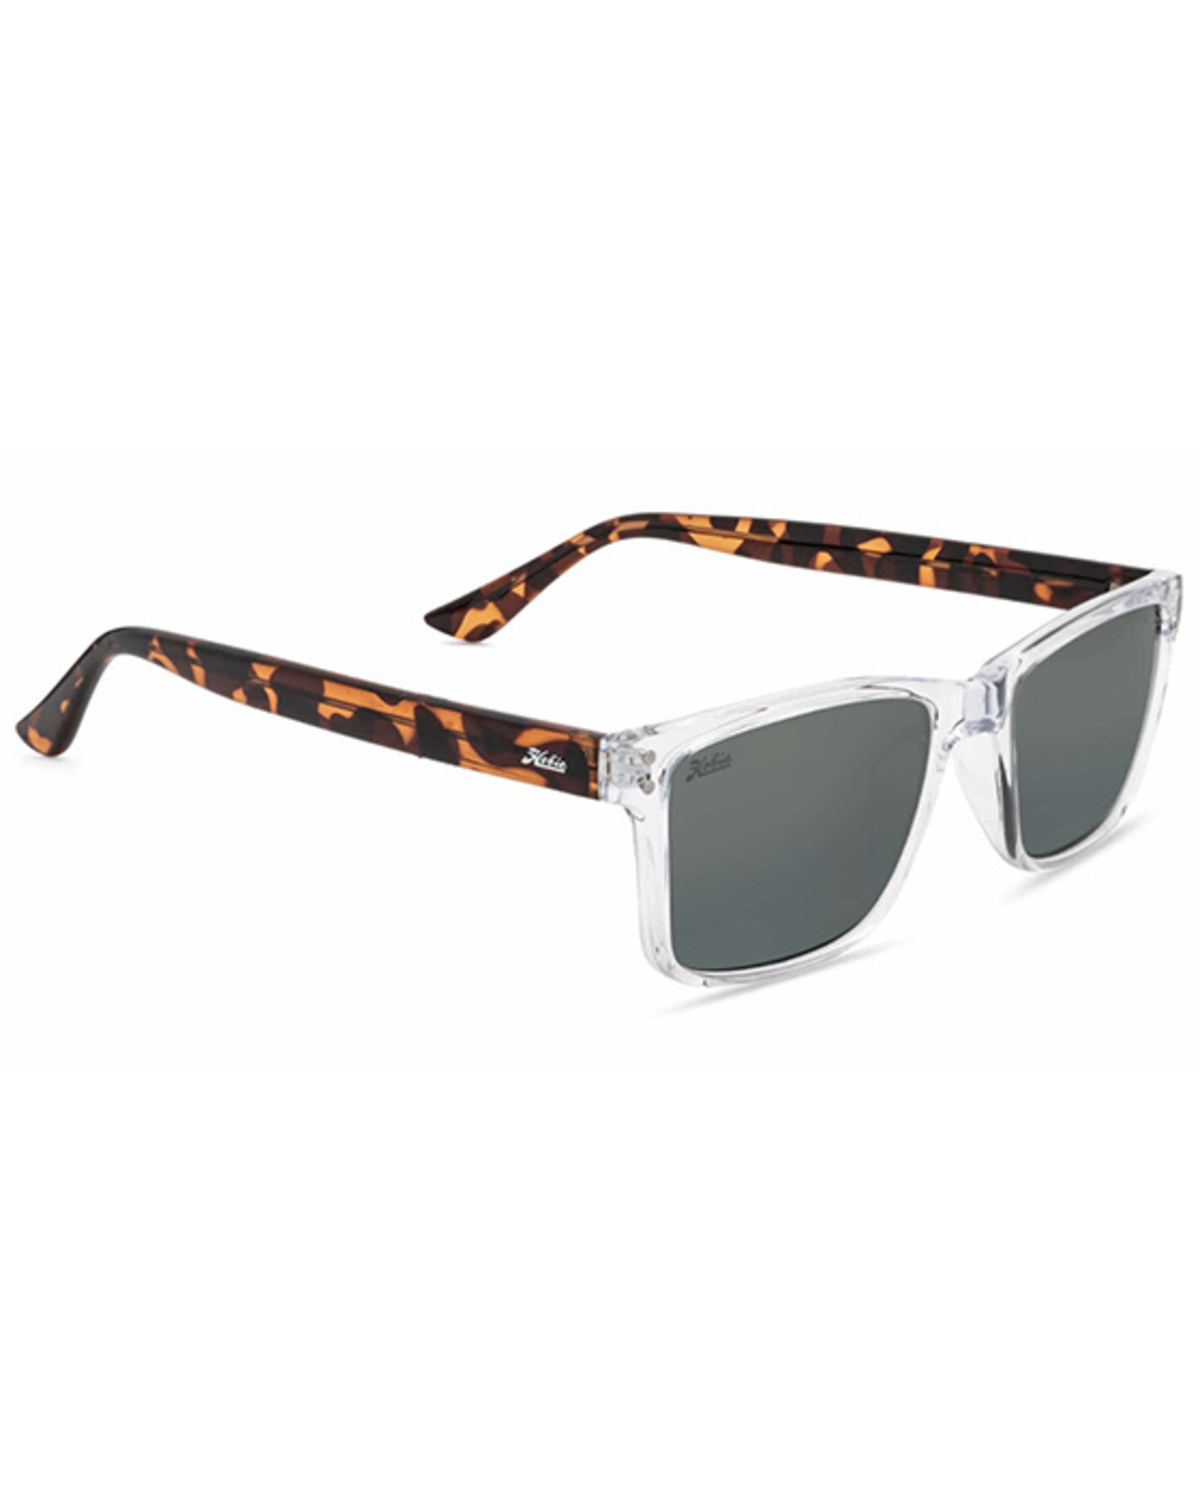 Hobie Flats Sunglasses